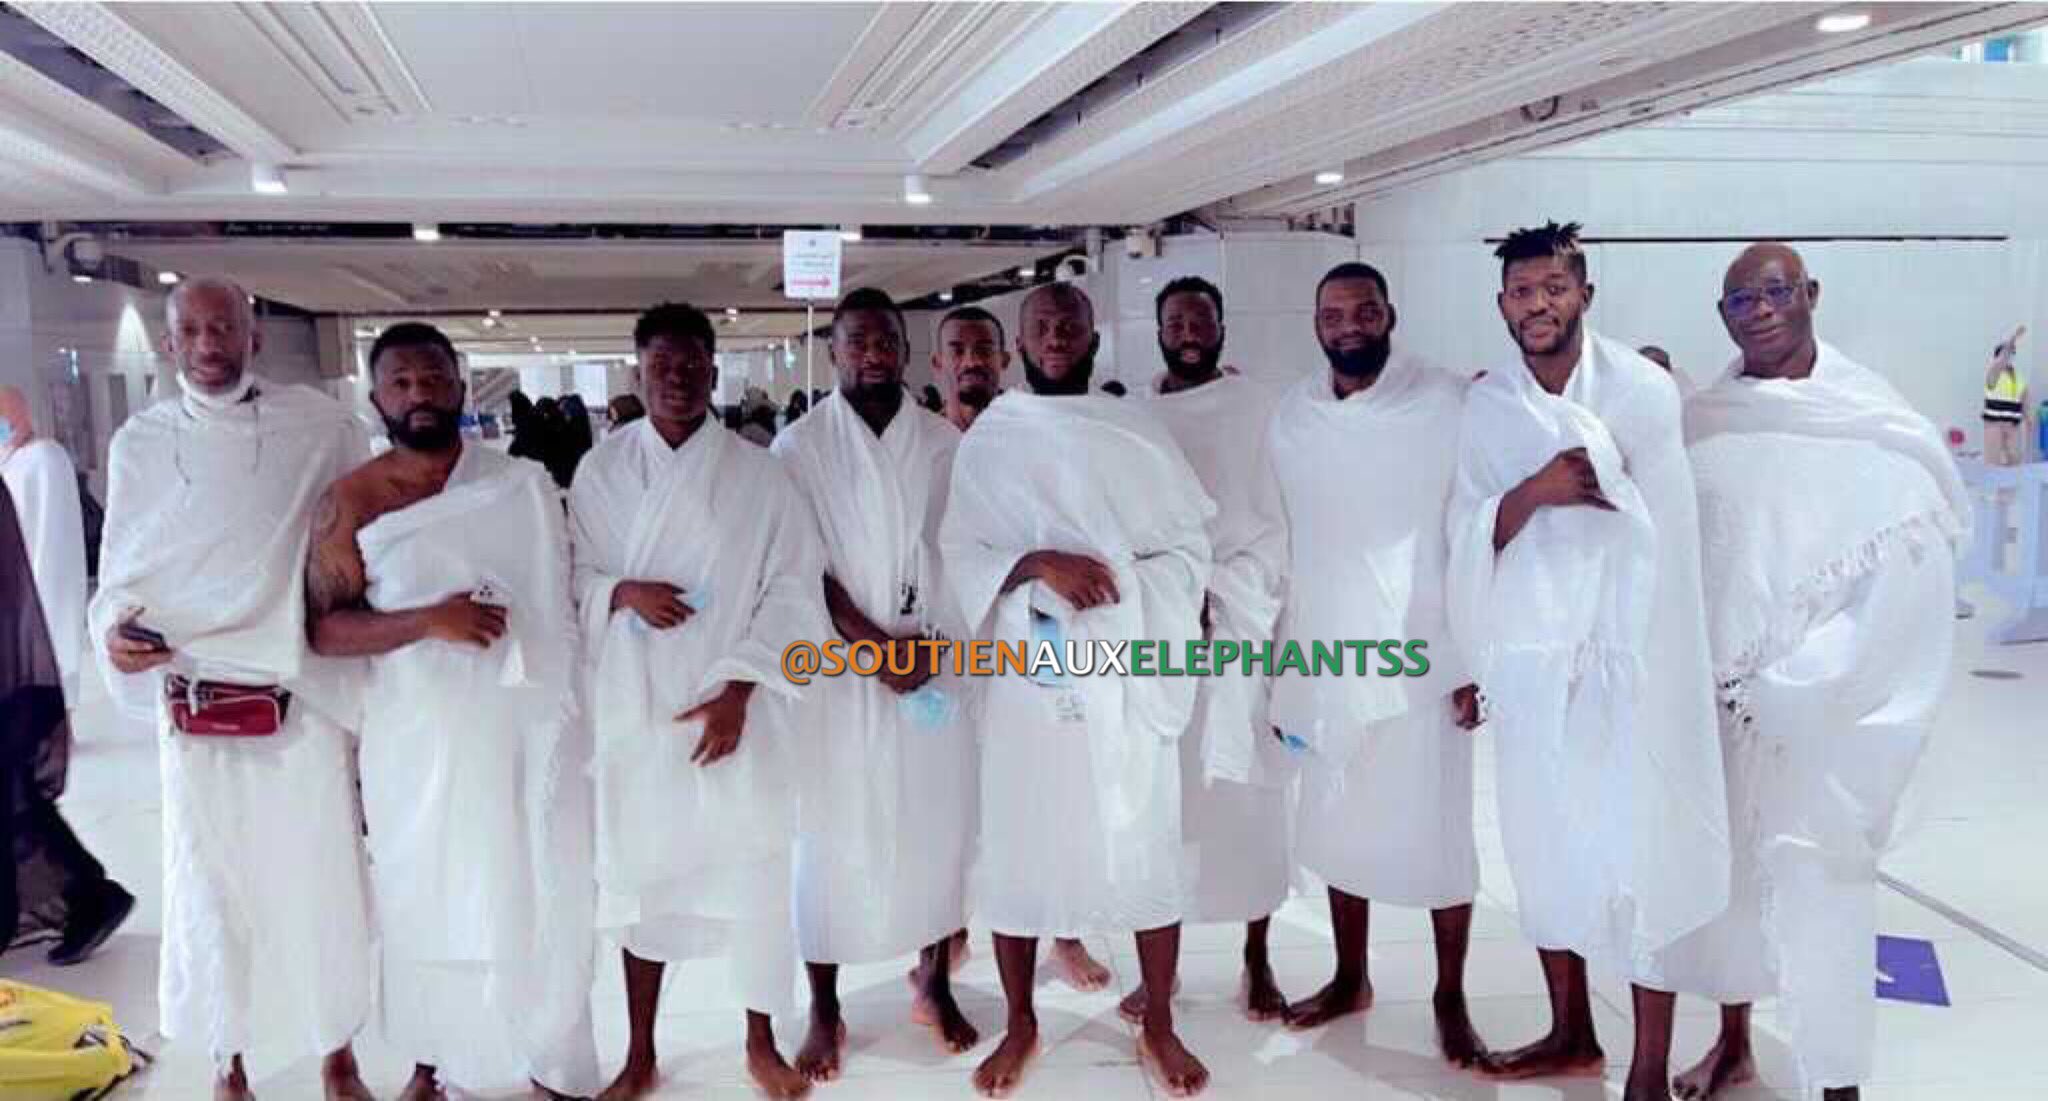 Les joueurs ivoiriens ont fait un tour à la Mecque avant de s’envoler pour le Cameroun